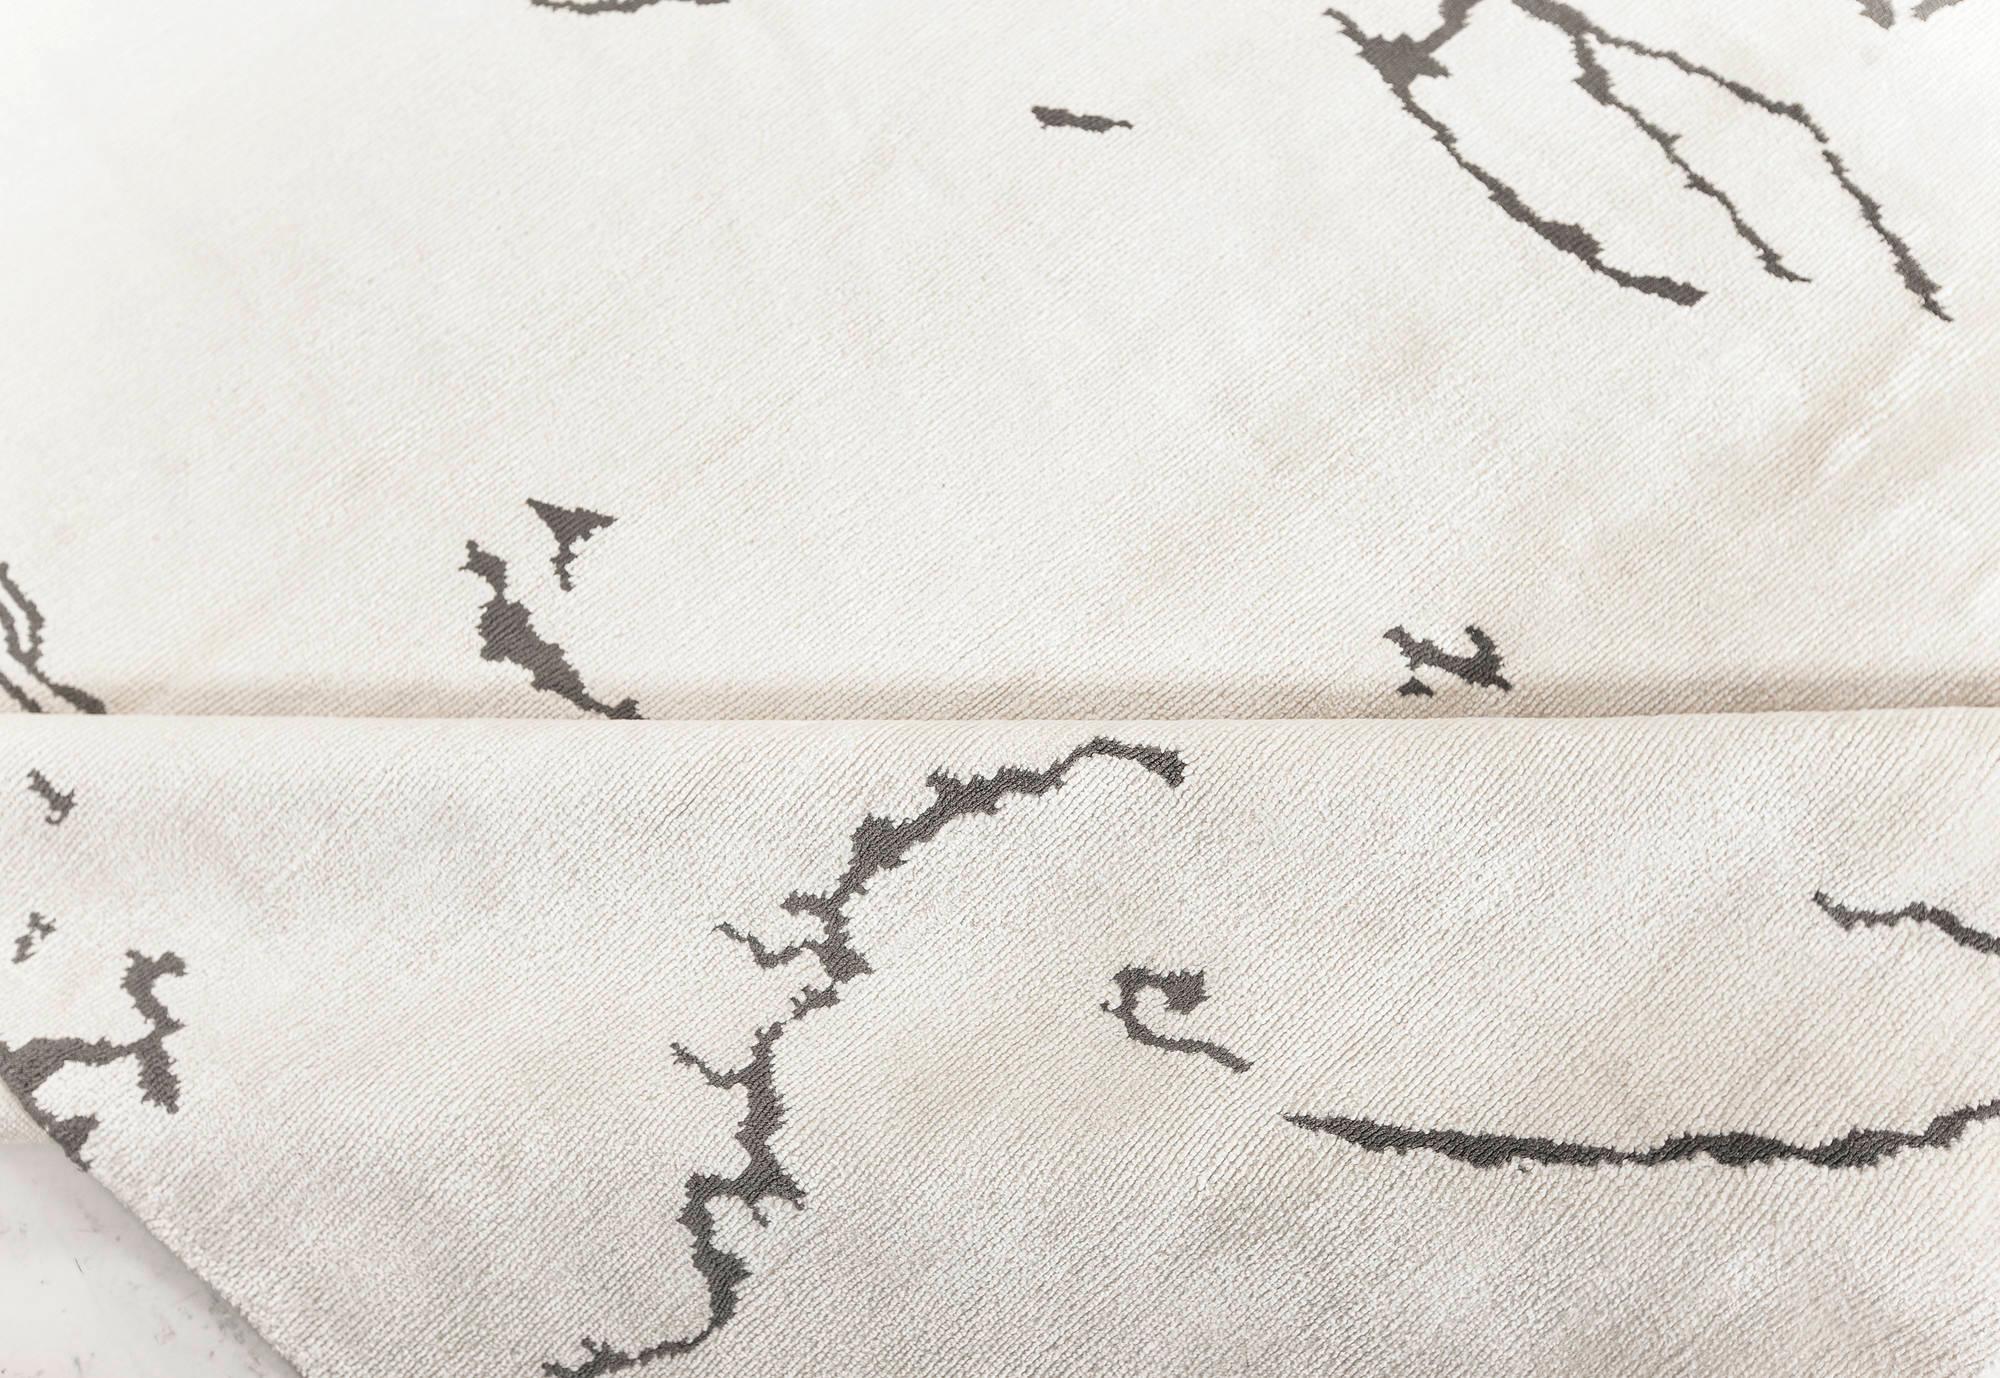 Zeitgenössischer beige-schwarzer Seidenhakenteppich von Doris Leslie Blau.
Größe: 15'0